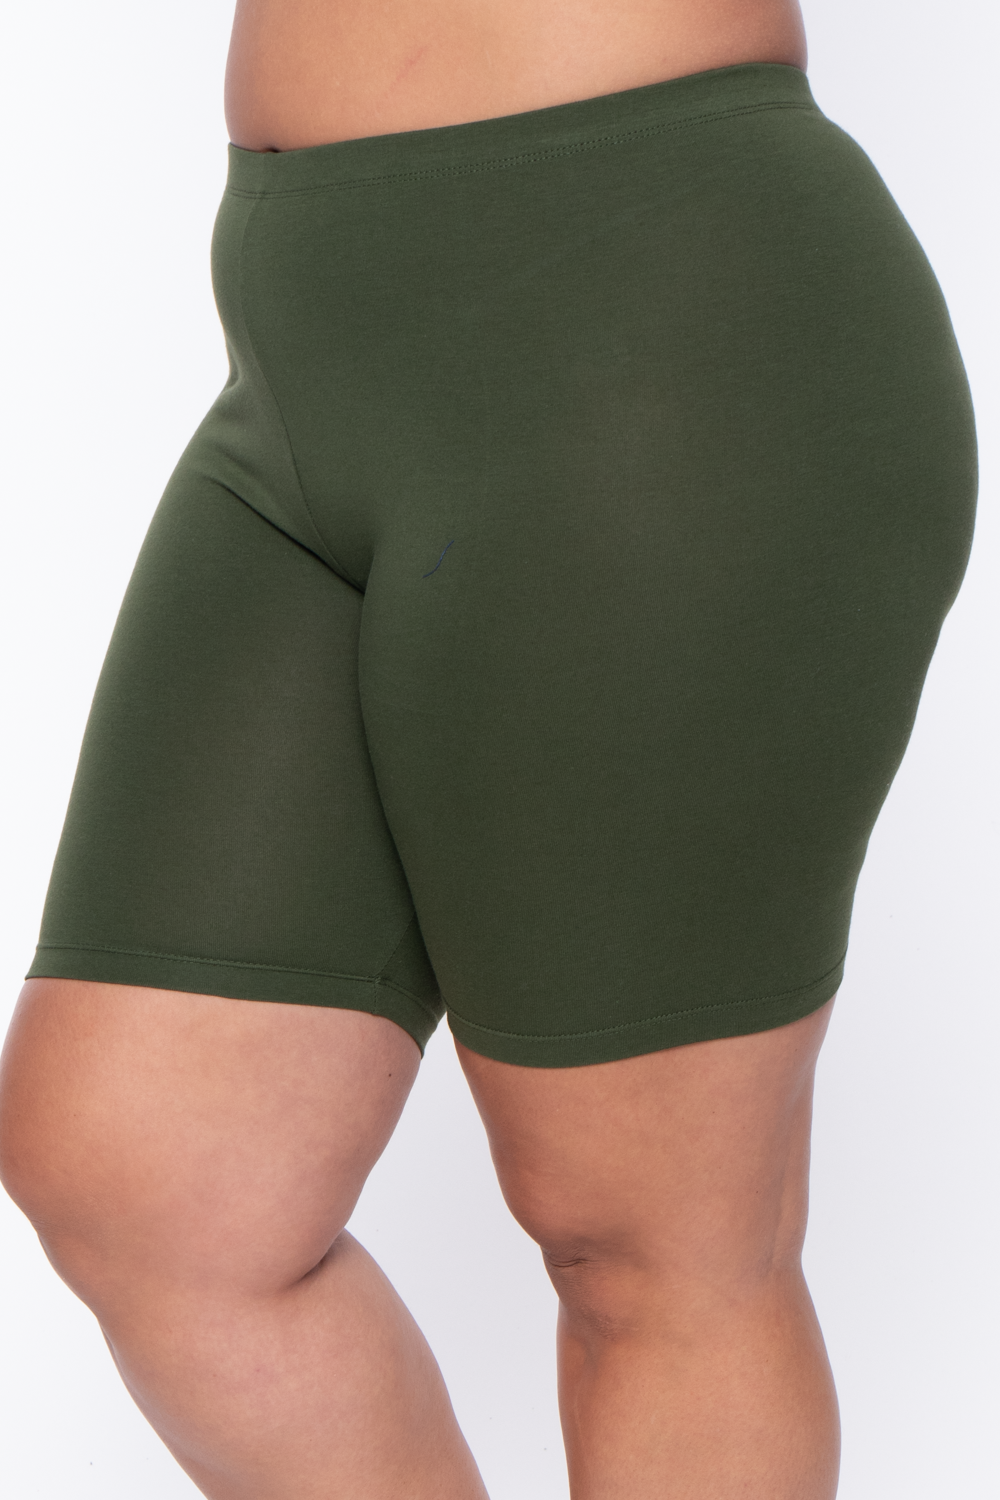 ASEIDFNSA Workout Shorta Womens Jean Shorts Plus Size Oily Silky